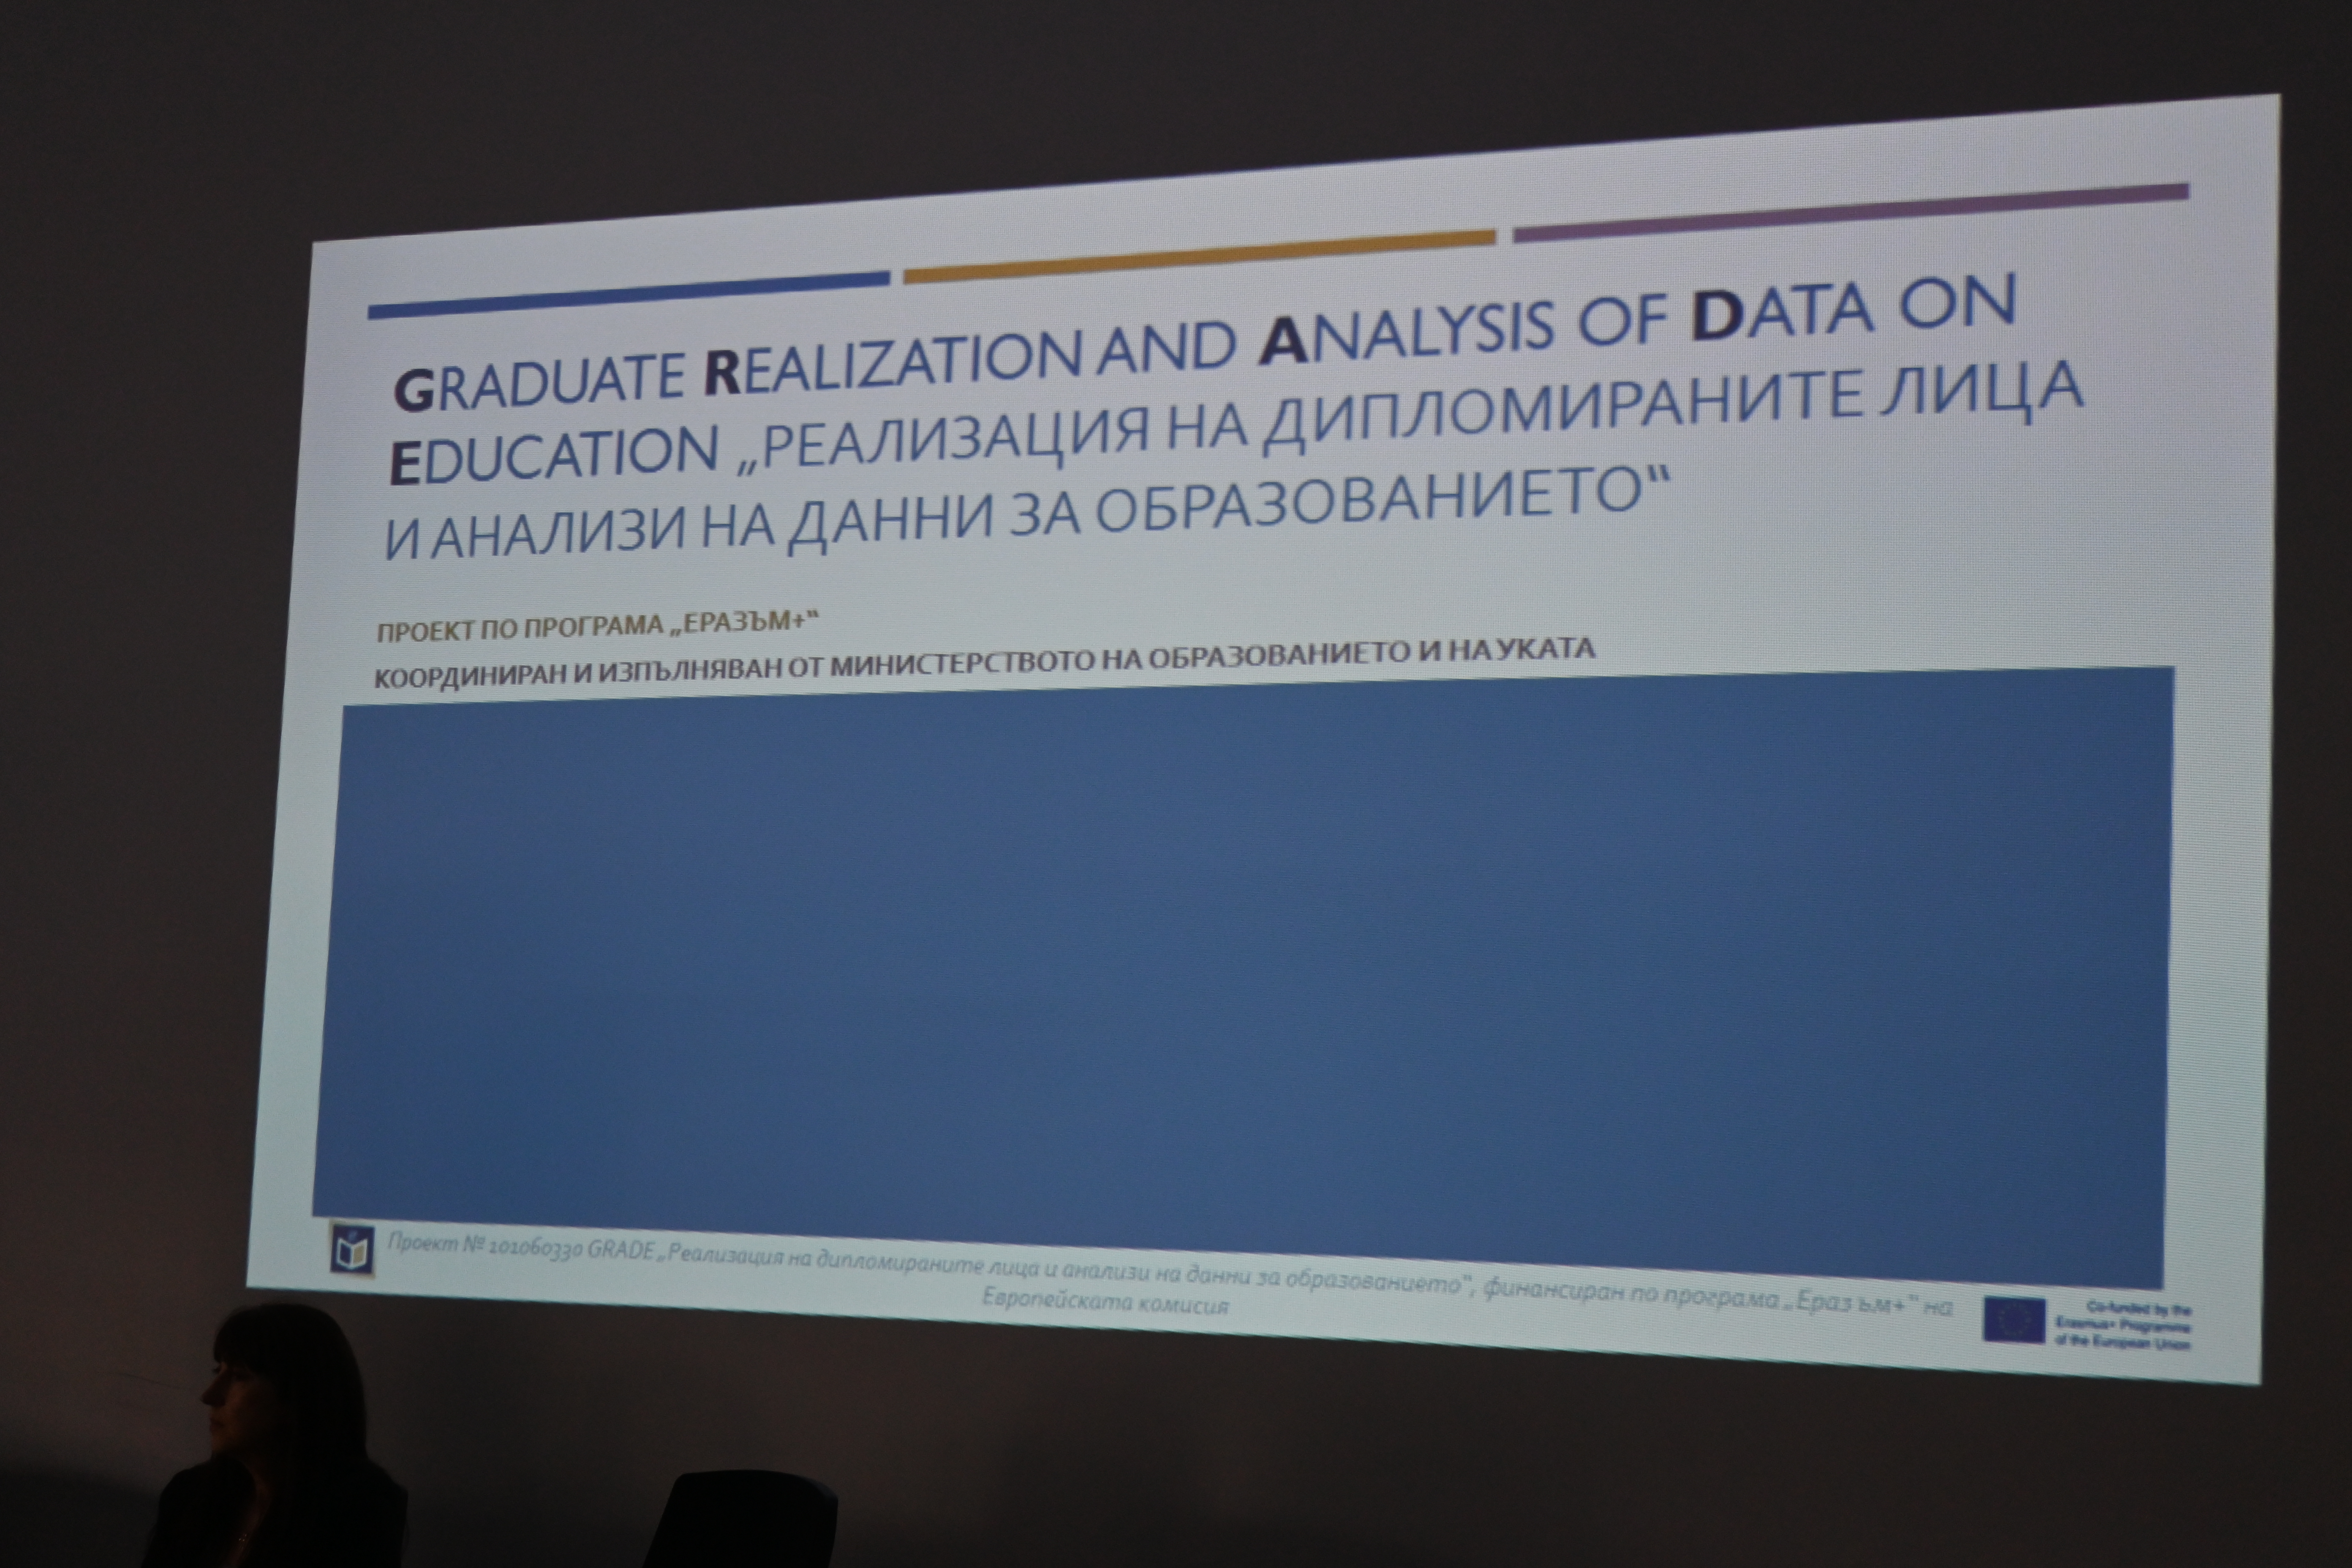 Снимка от пресконференцията за представяне на проекта GRADE „Реализация на дипломираните лица и анализи на данни за образованието“